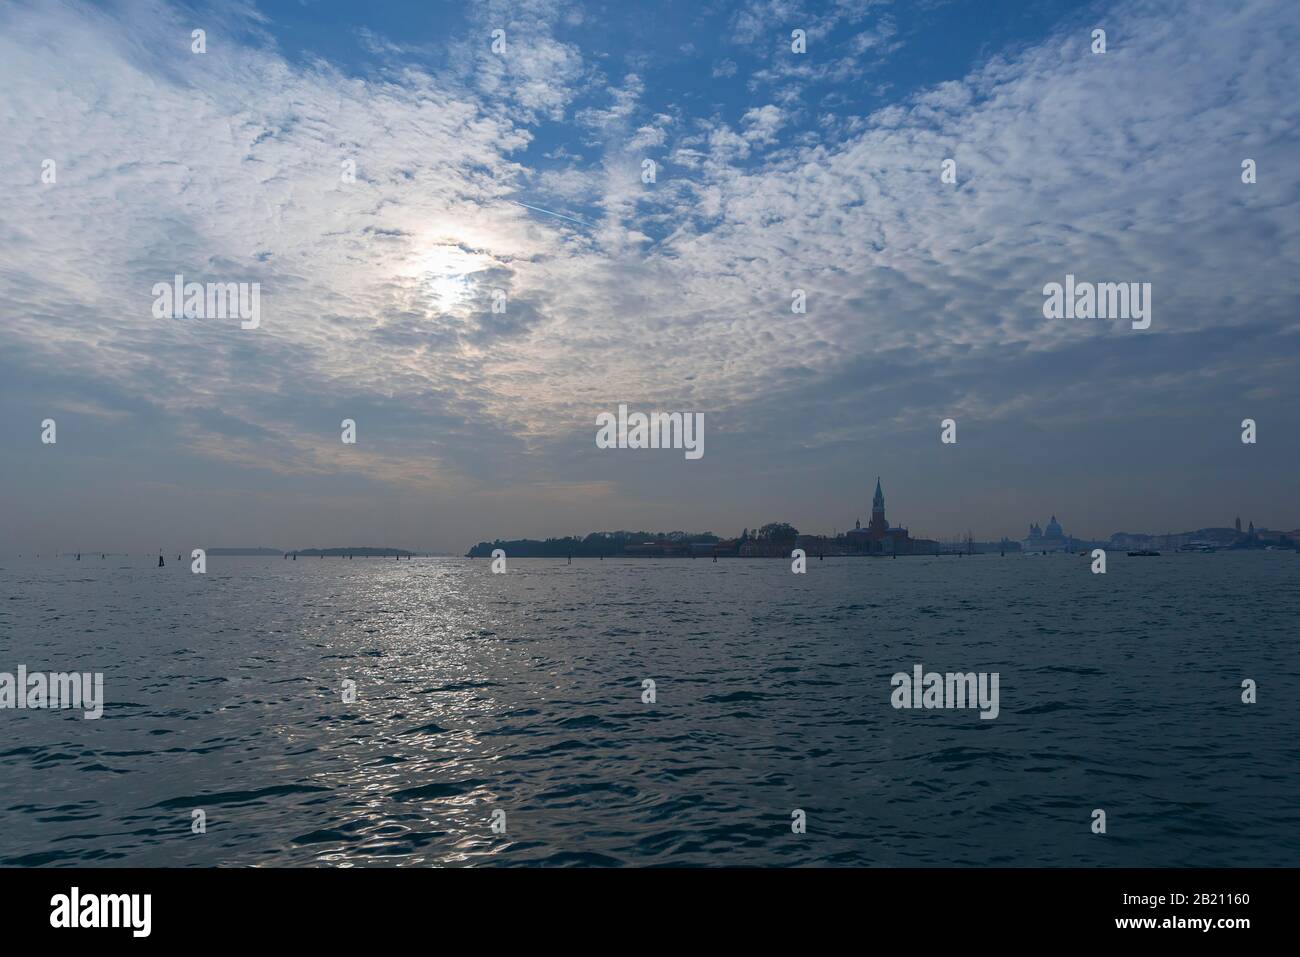 Veduta dell'isola di San Giorgio maggiore, cielo nuvoloso, Venezia, Veneto, Italia Foto Stock